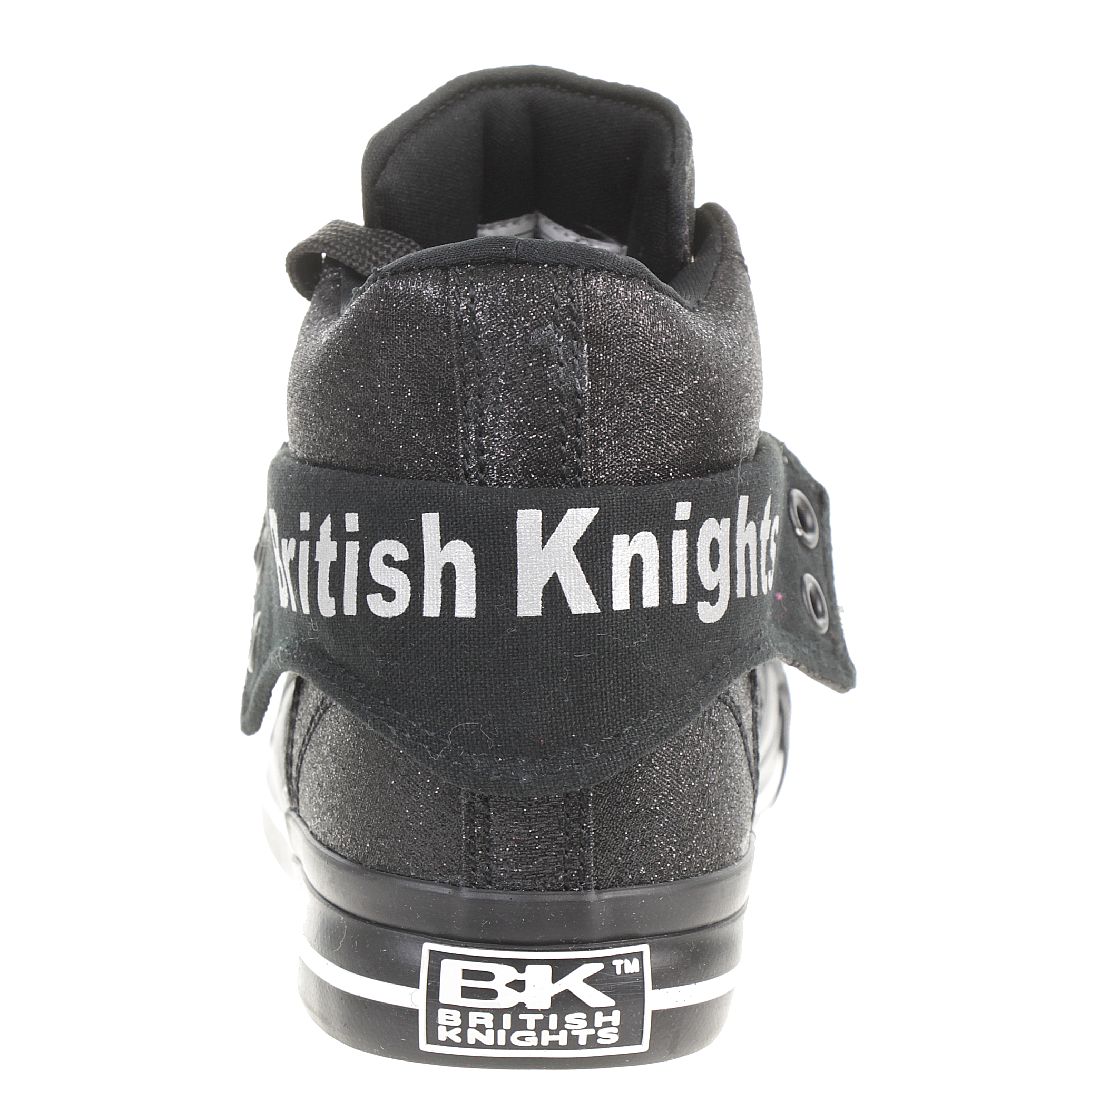 British Knights ROCO BK Damen Sneaker B43 3703 04 schwarz Glitzer Textil